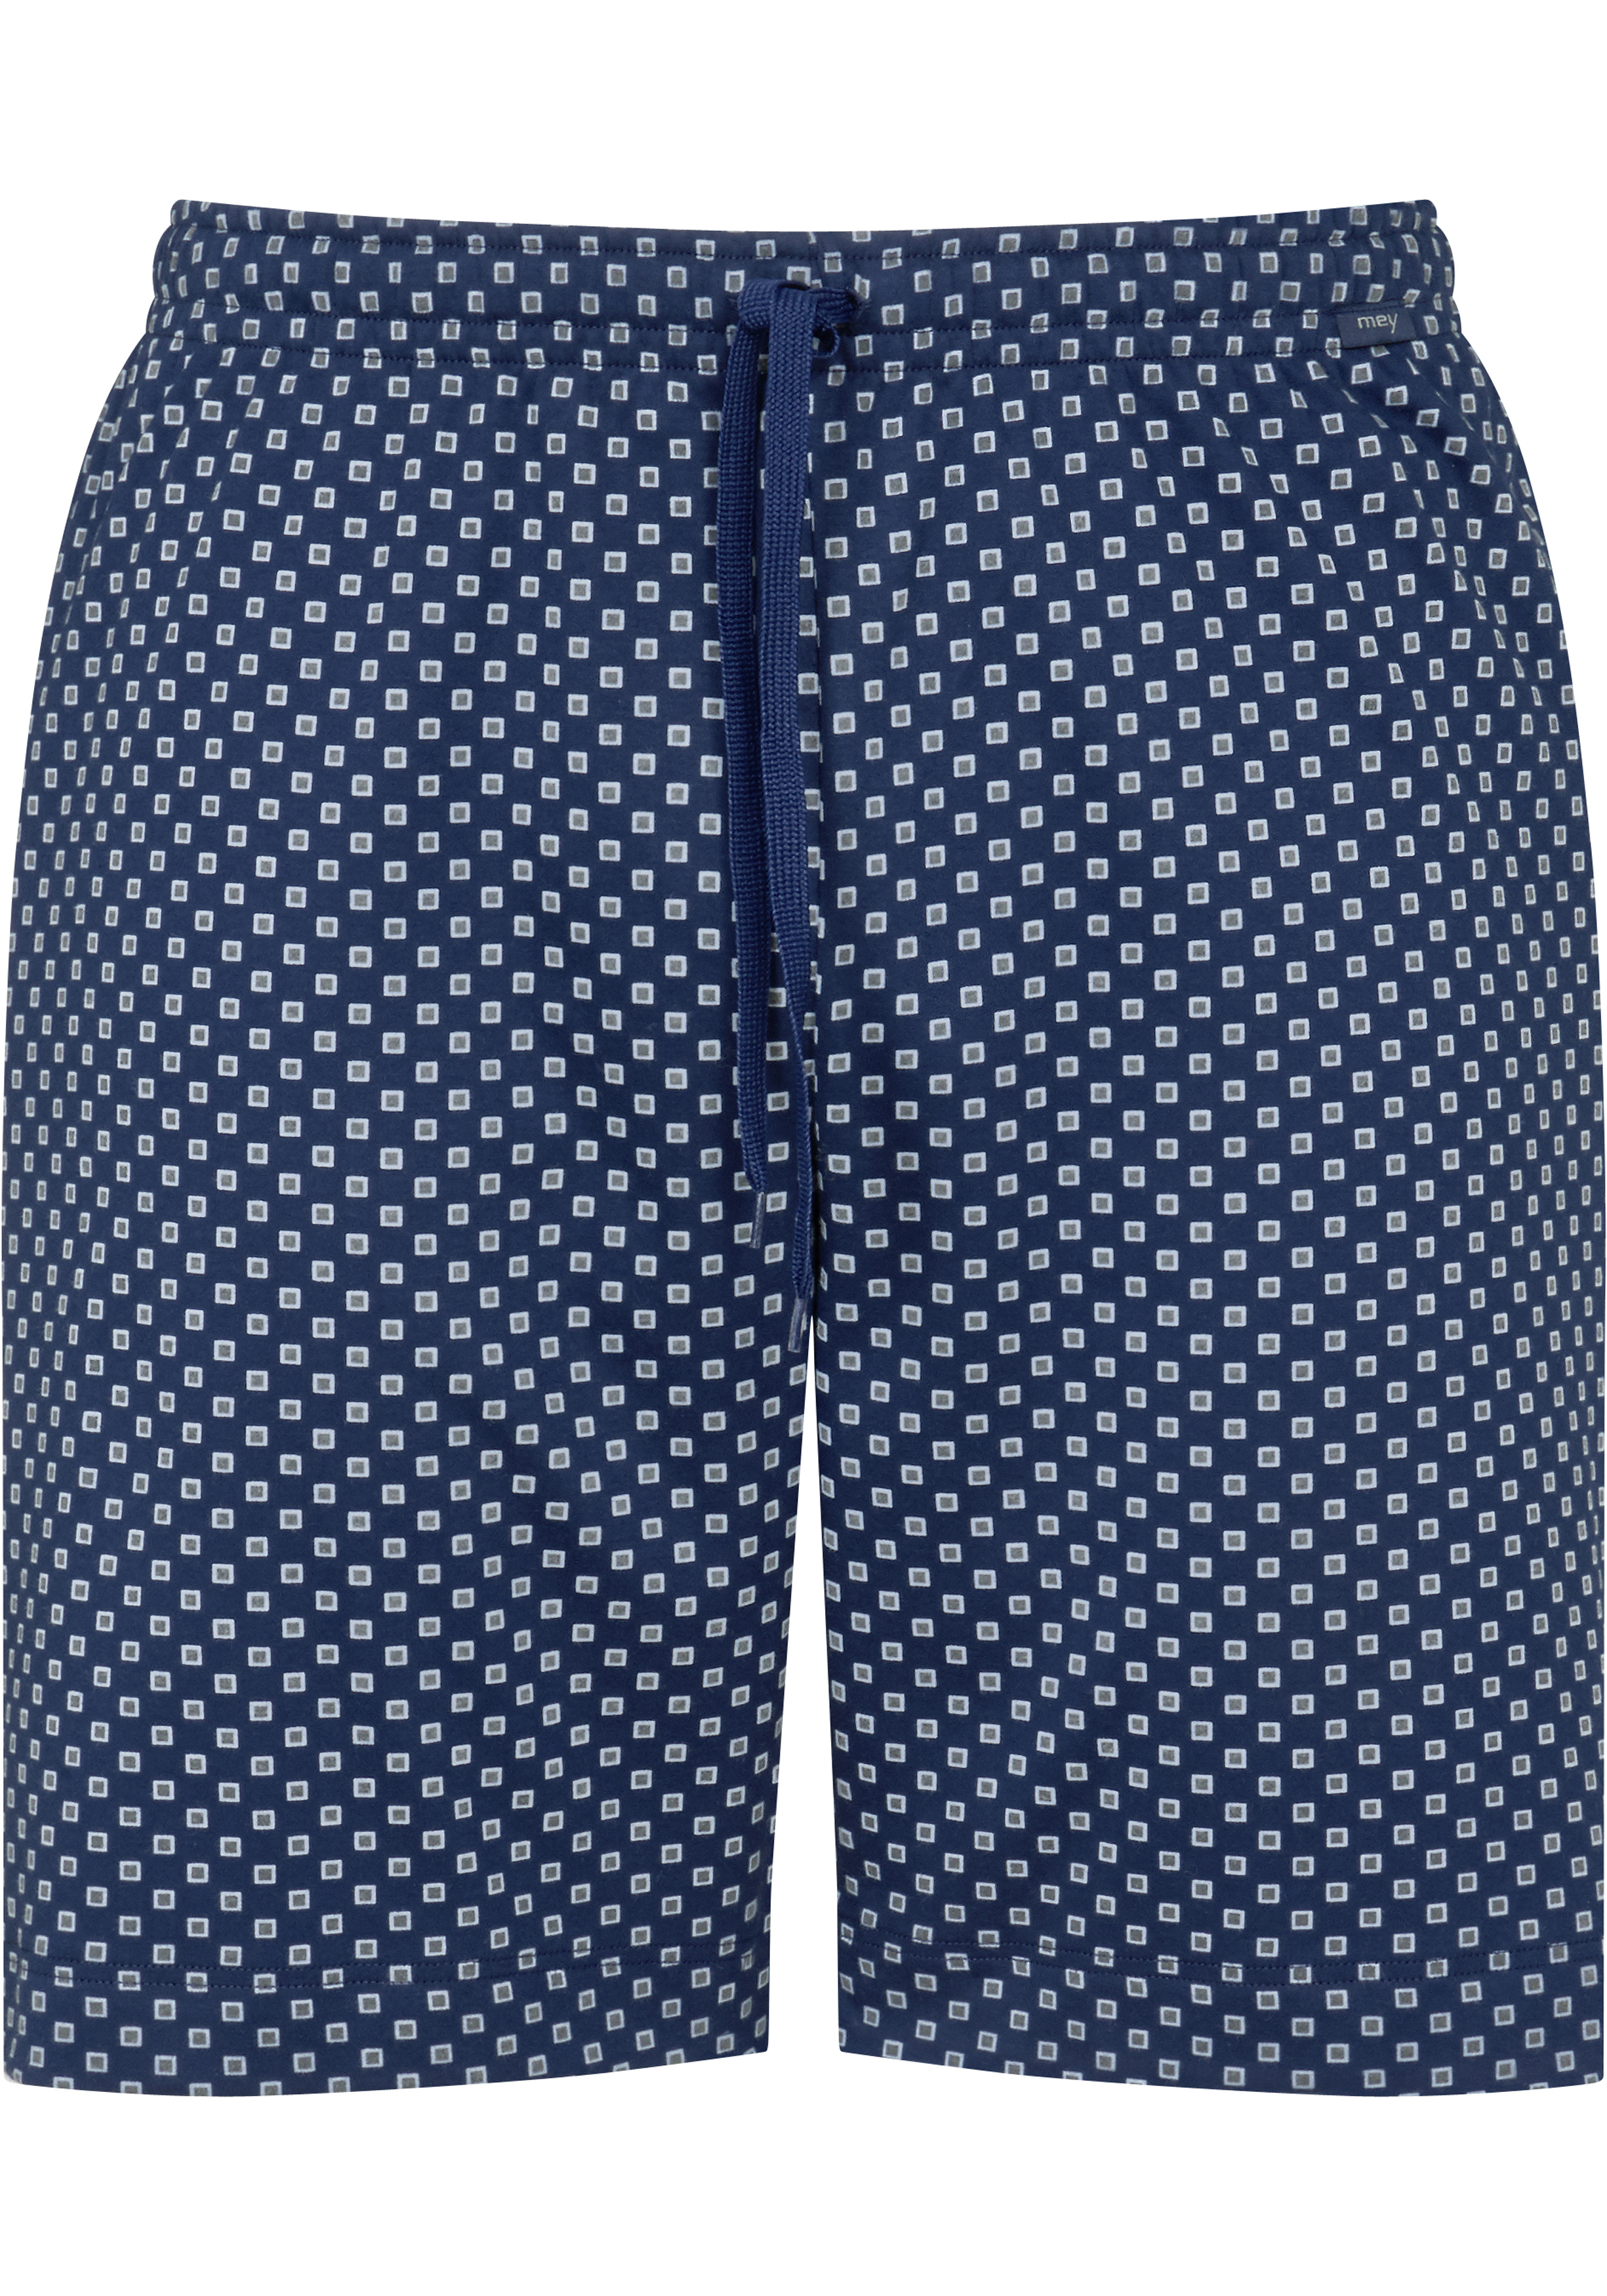 Kloppen Brood blok Mey pyjamabroek kort, Gisborne, blauw dessin - Shop de nieuwste  voorjaarsmode